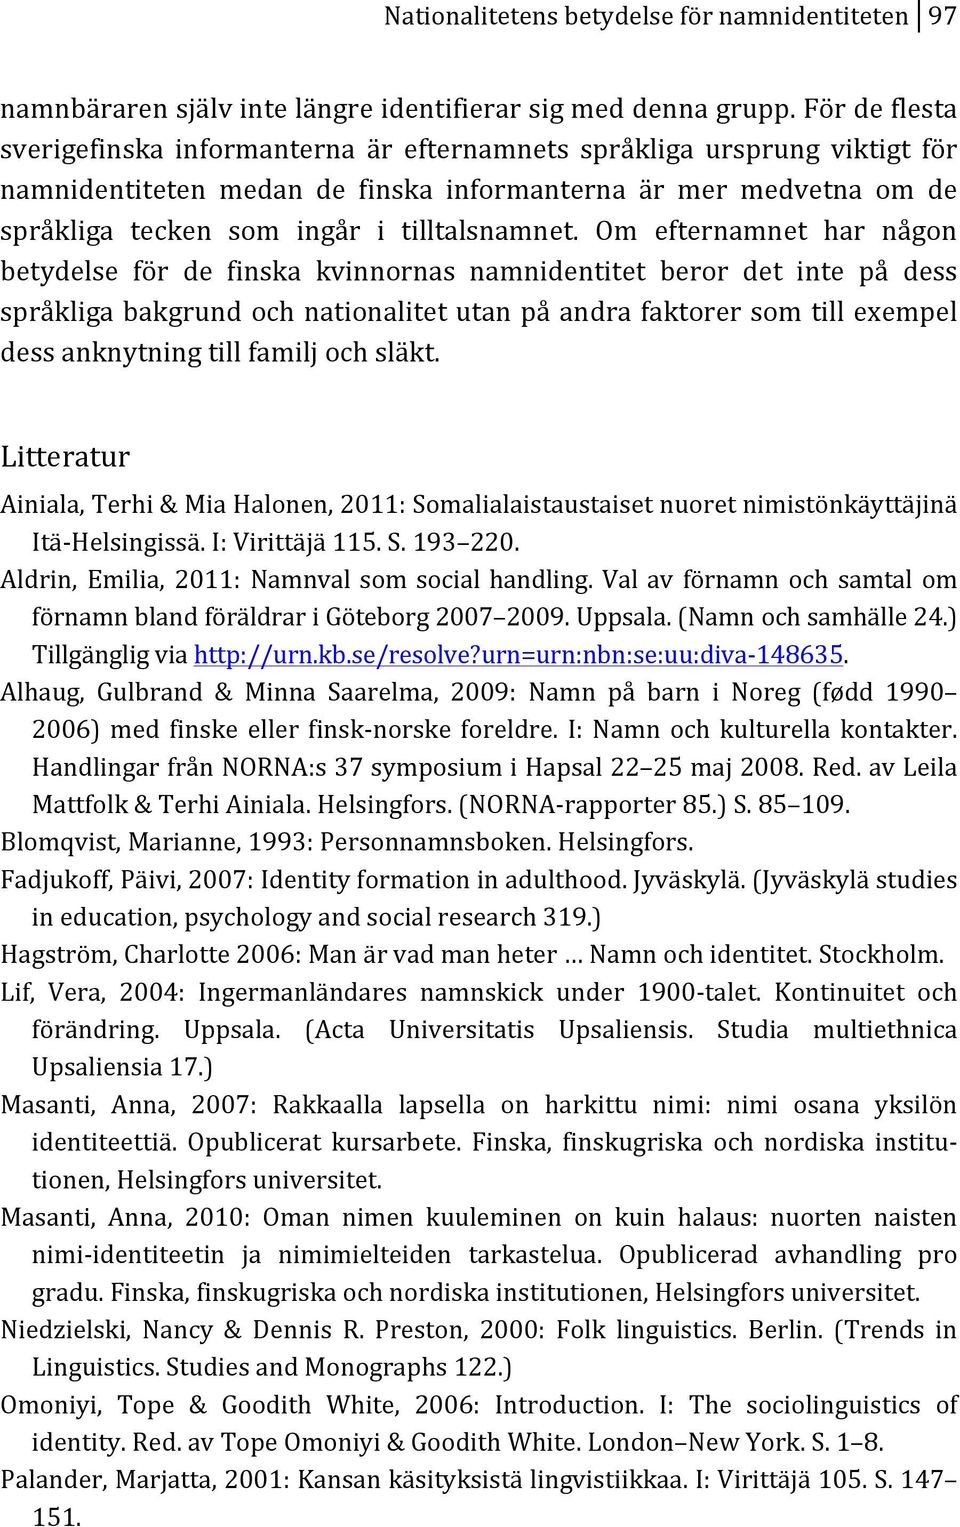 Om efternamnet har någon betydelse för de finska kvinnornas namnidentitet beror det inte på dess språkligabakgrundochnationalitetutanpåandrafaktorersomtillexempel dessanknytningtillfamiljochsläkt.